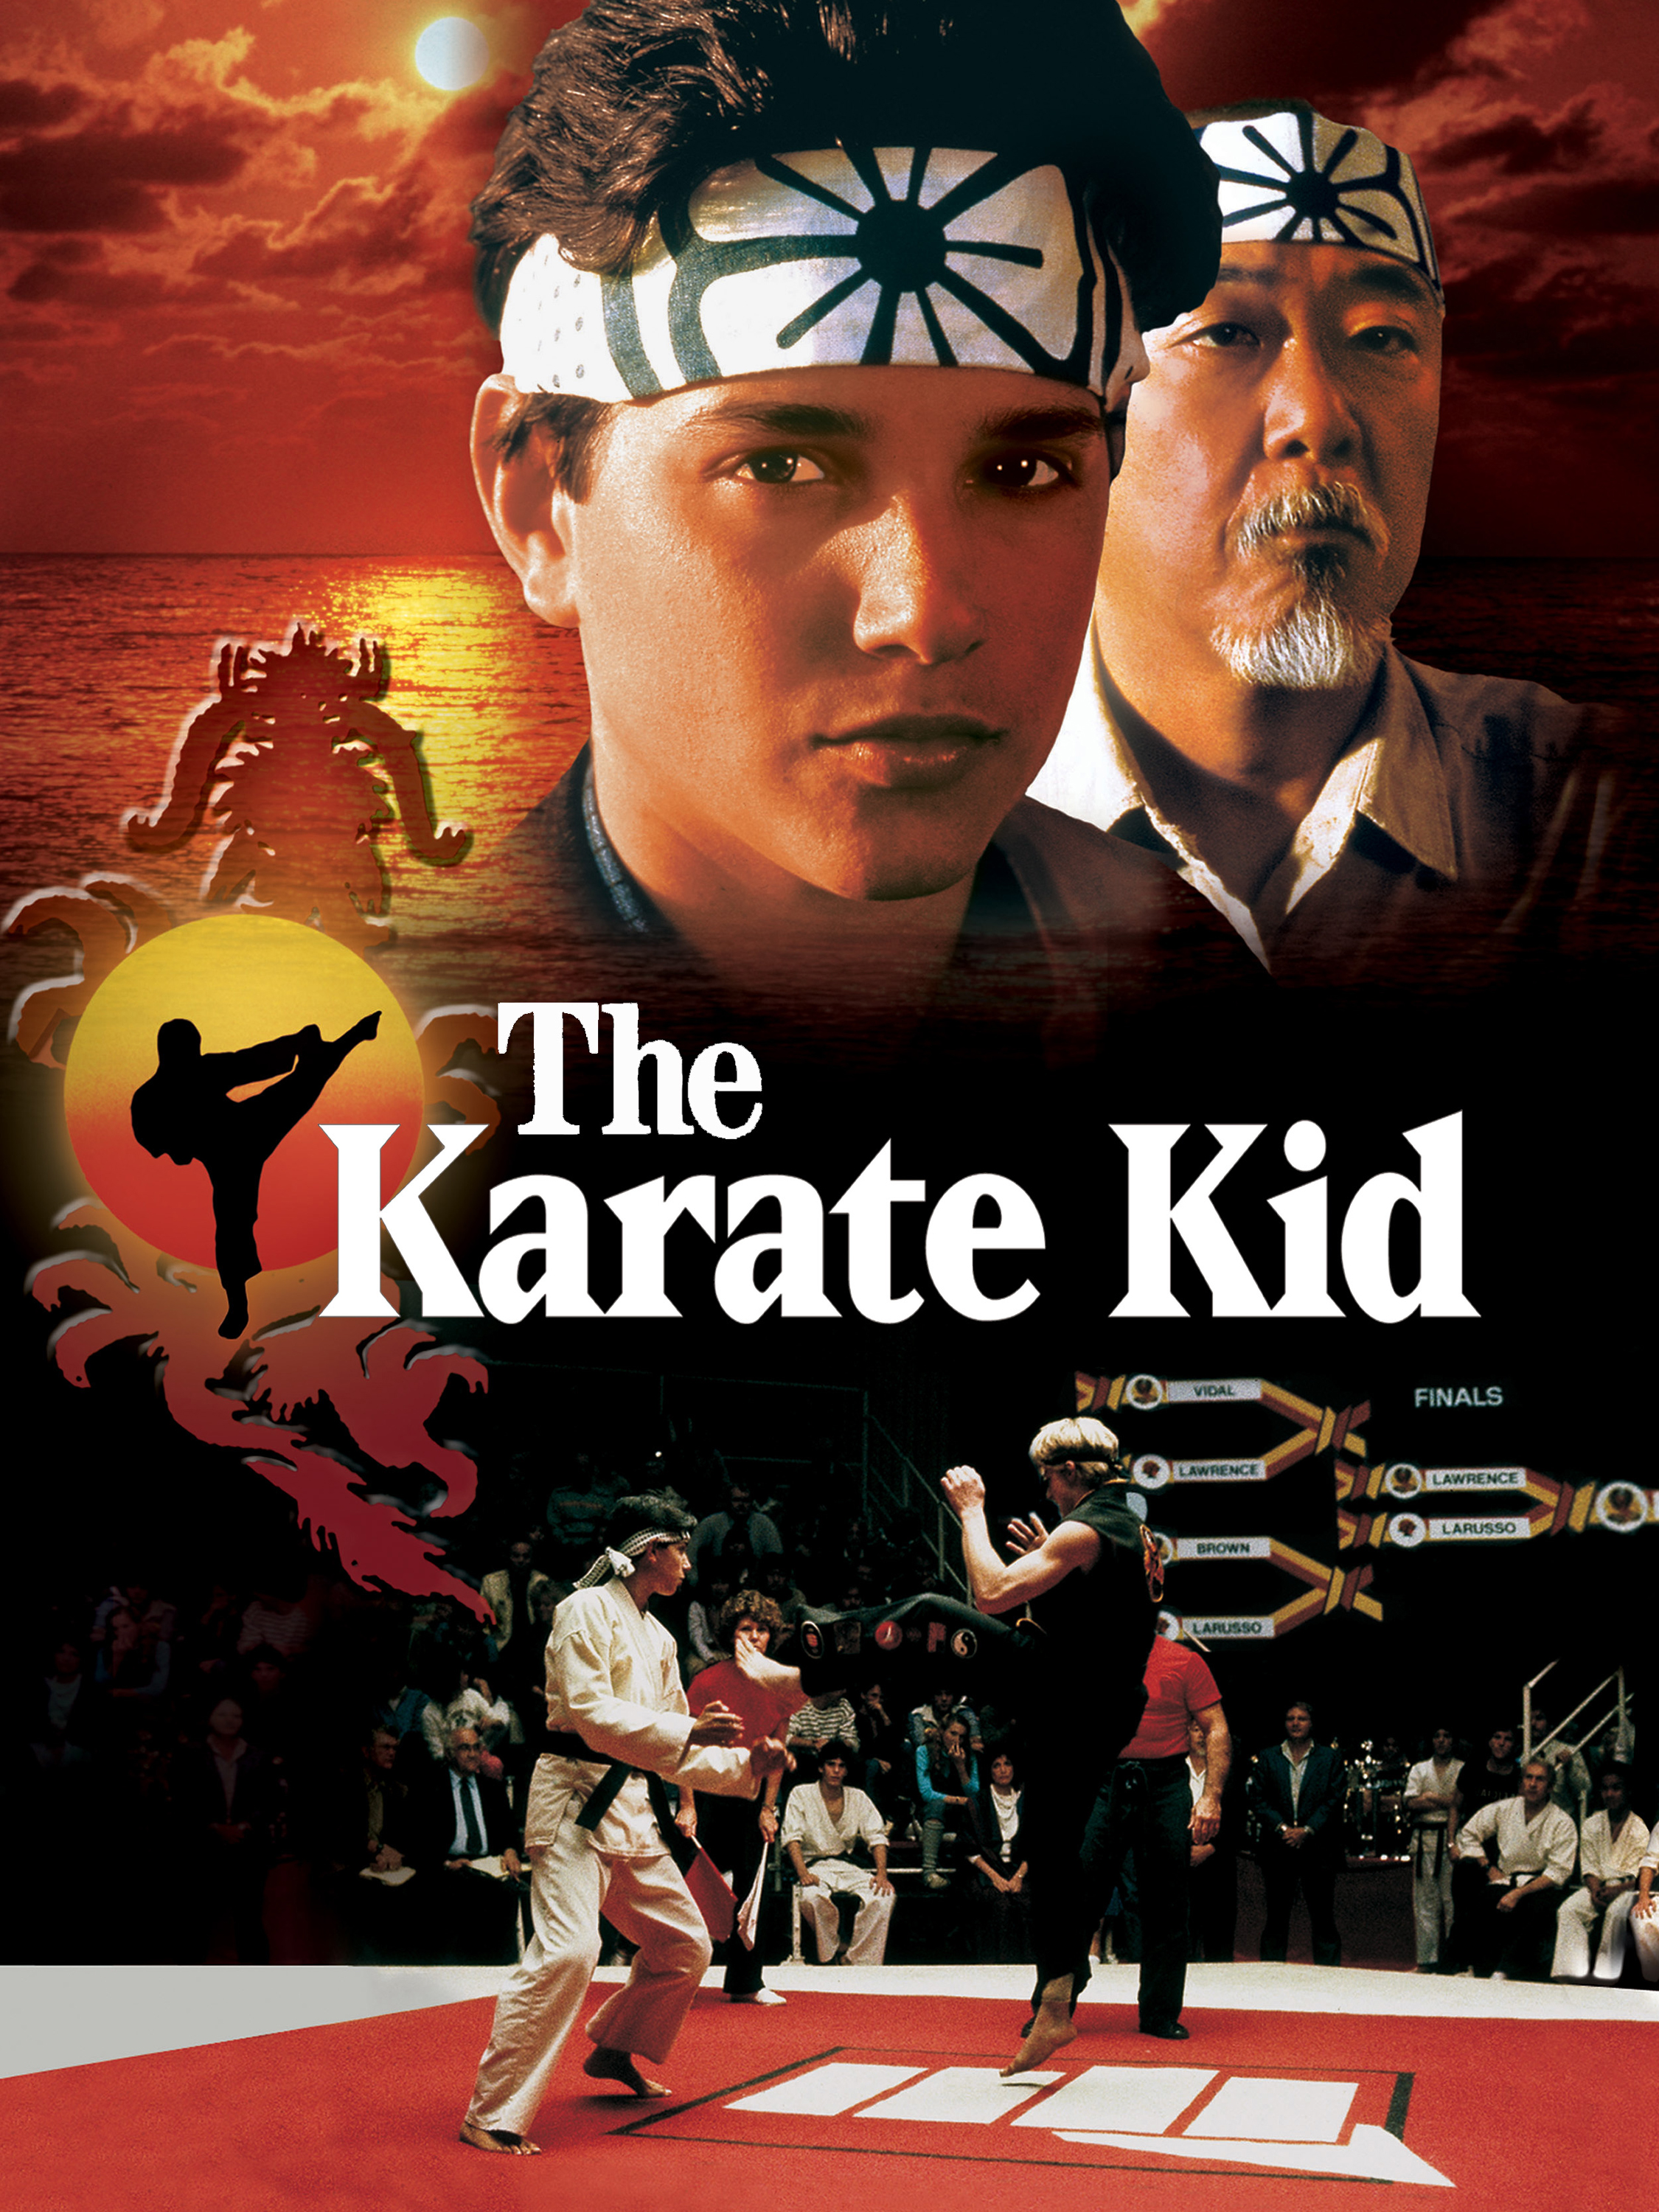 Karate kid cast